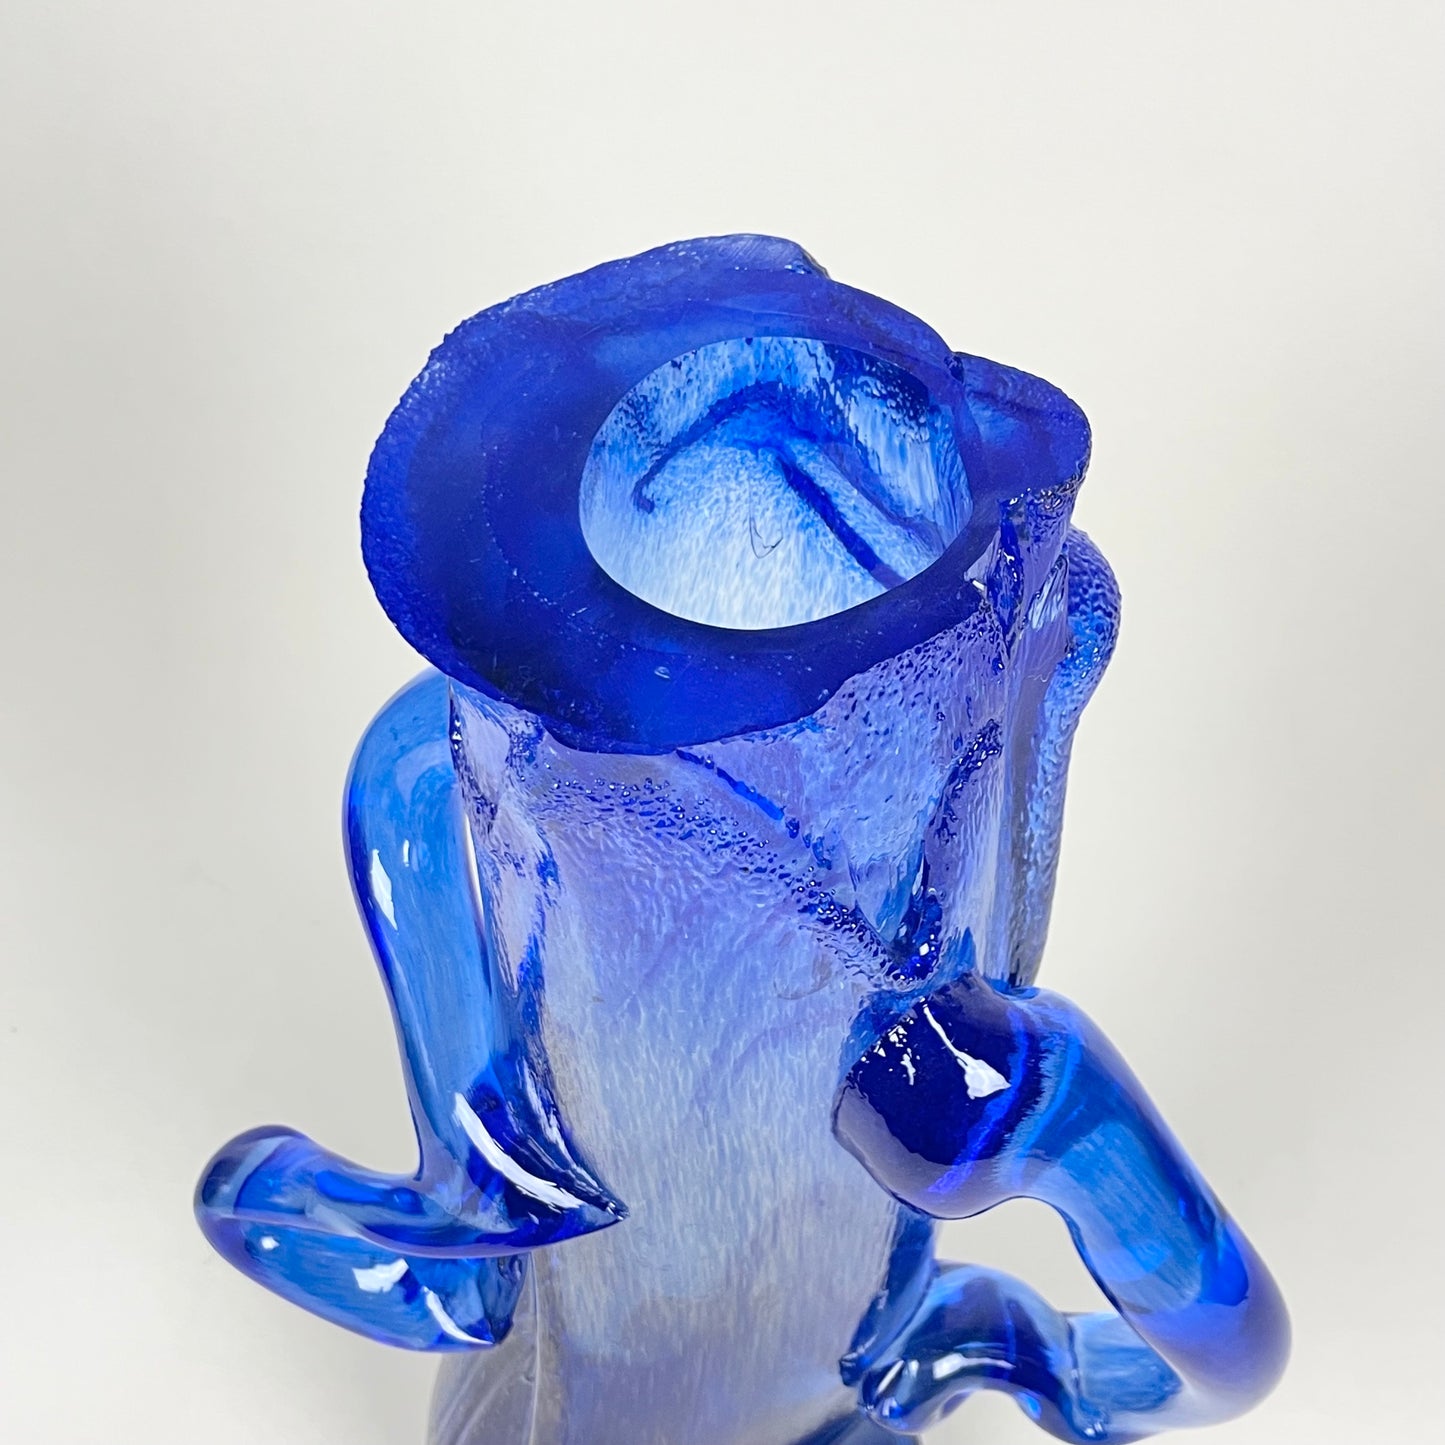 Blue glass vase by Nicole Walker